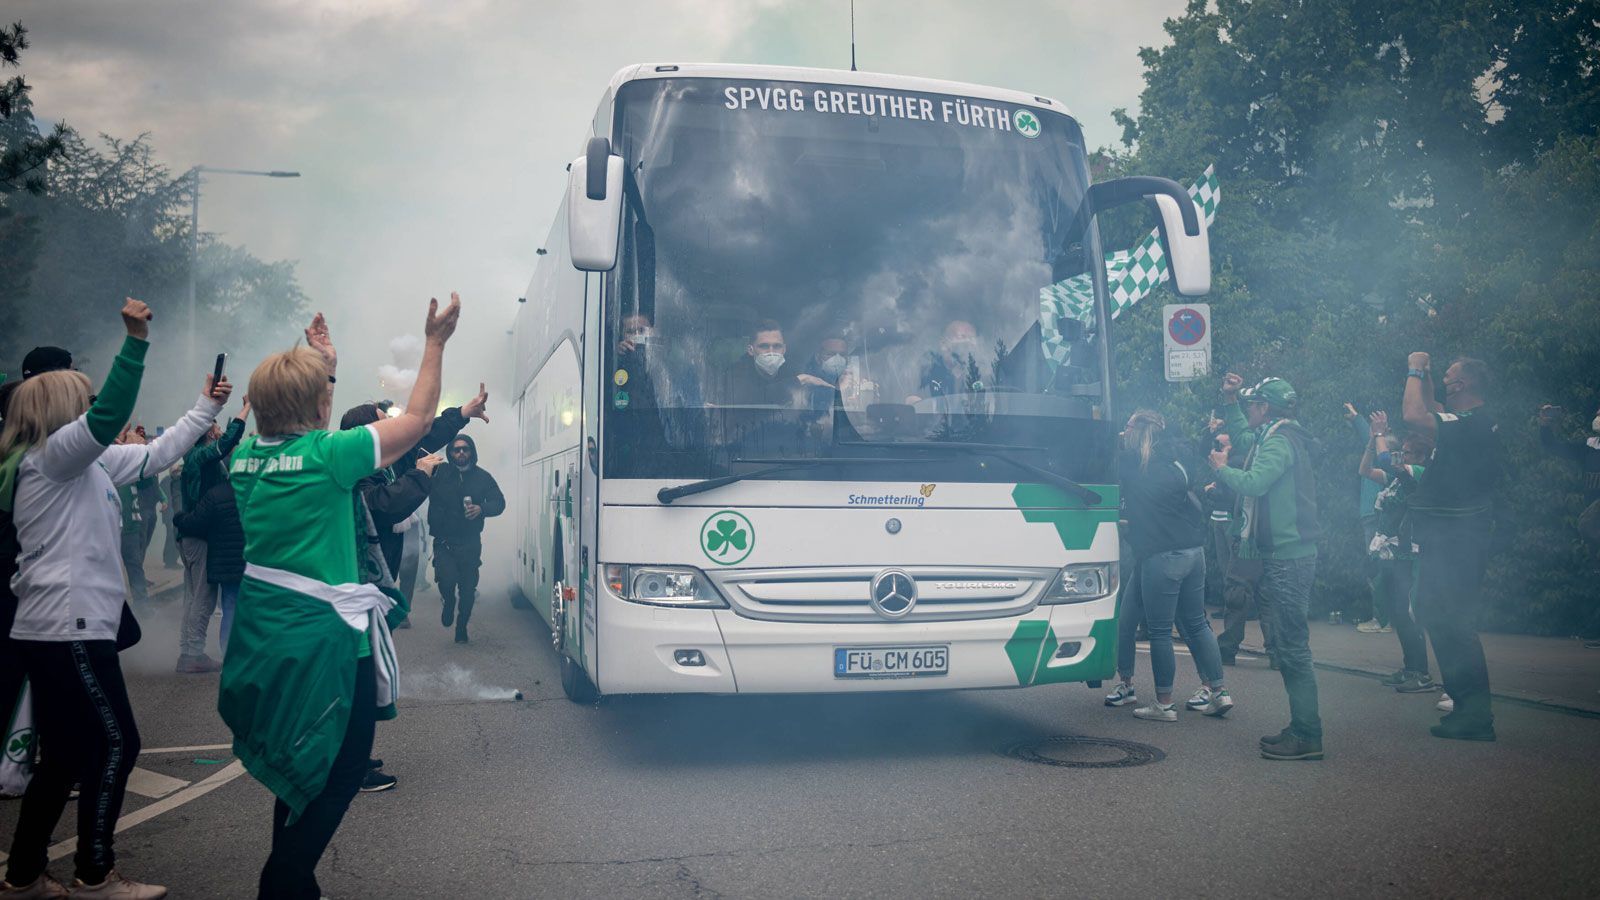 
                <strong>Fürth: Mannschaftsbus wird empfangen</strong><br>
                Auf dem Weg zum Stadion standen in Fürth einige Fans am Straßenrand und empfingen den Mannschaftsbus.
              